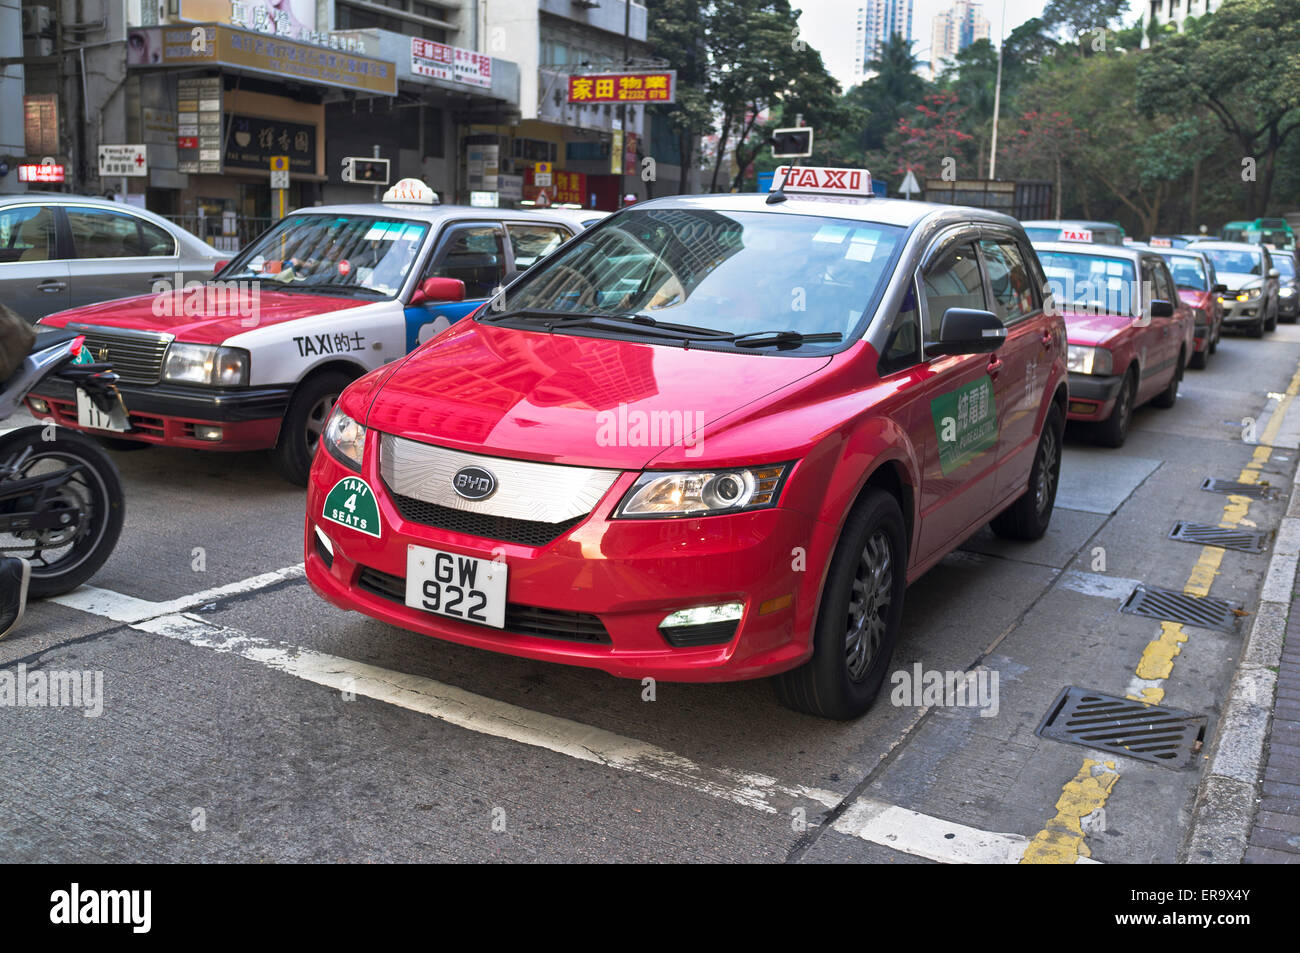 Voiture électrique dh TAXI taxi électrique de HONG KONG Chine voitures taxis Banque D'Images